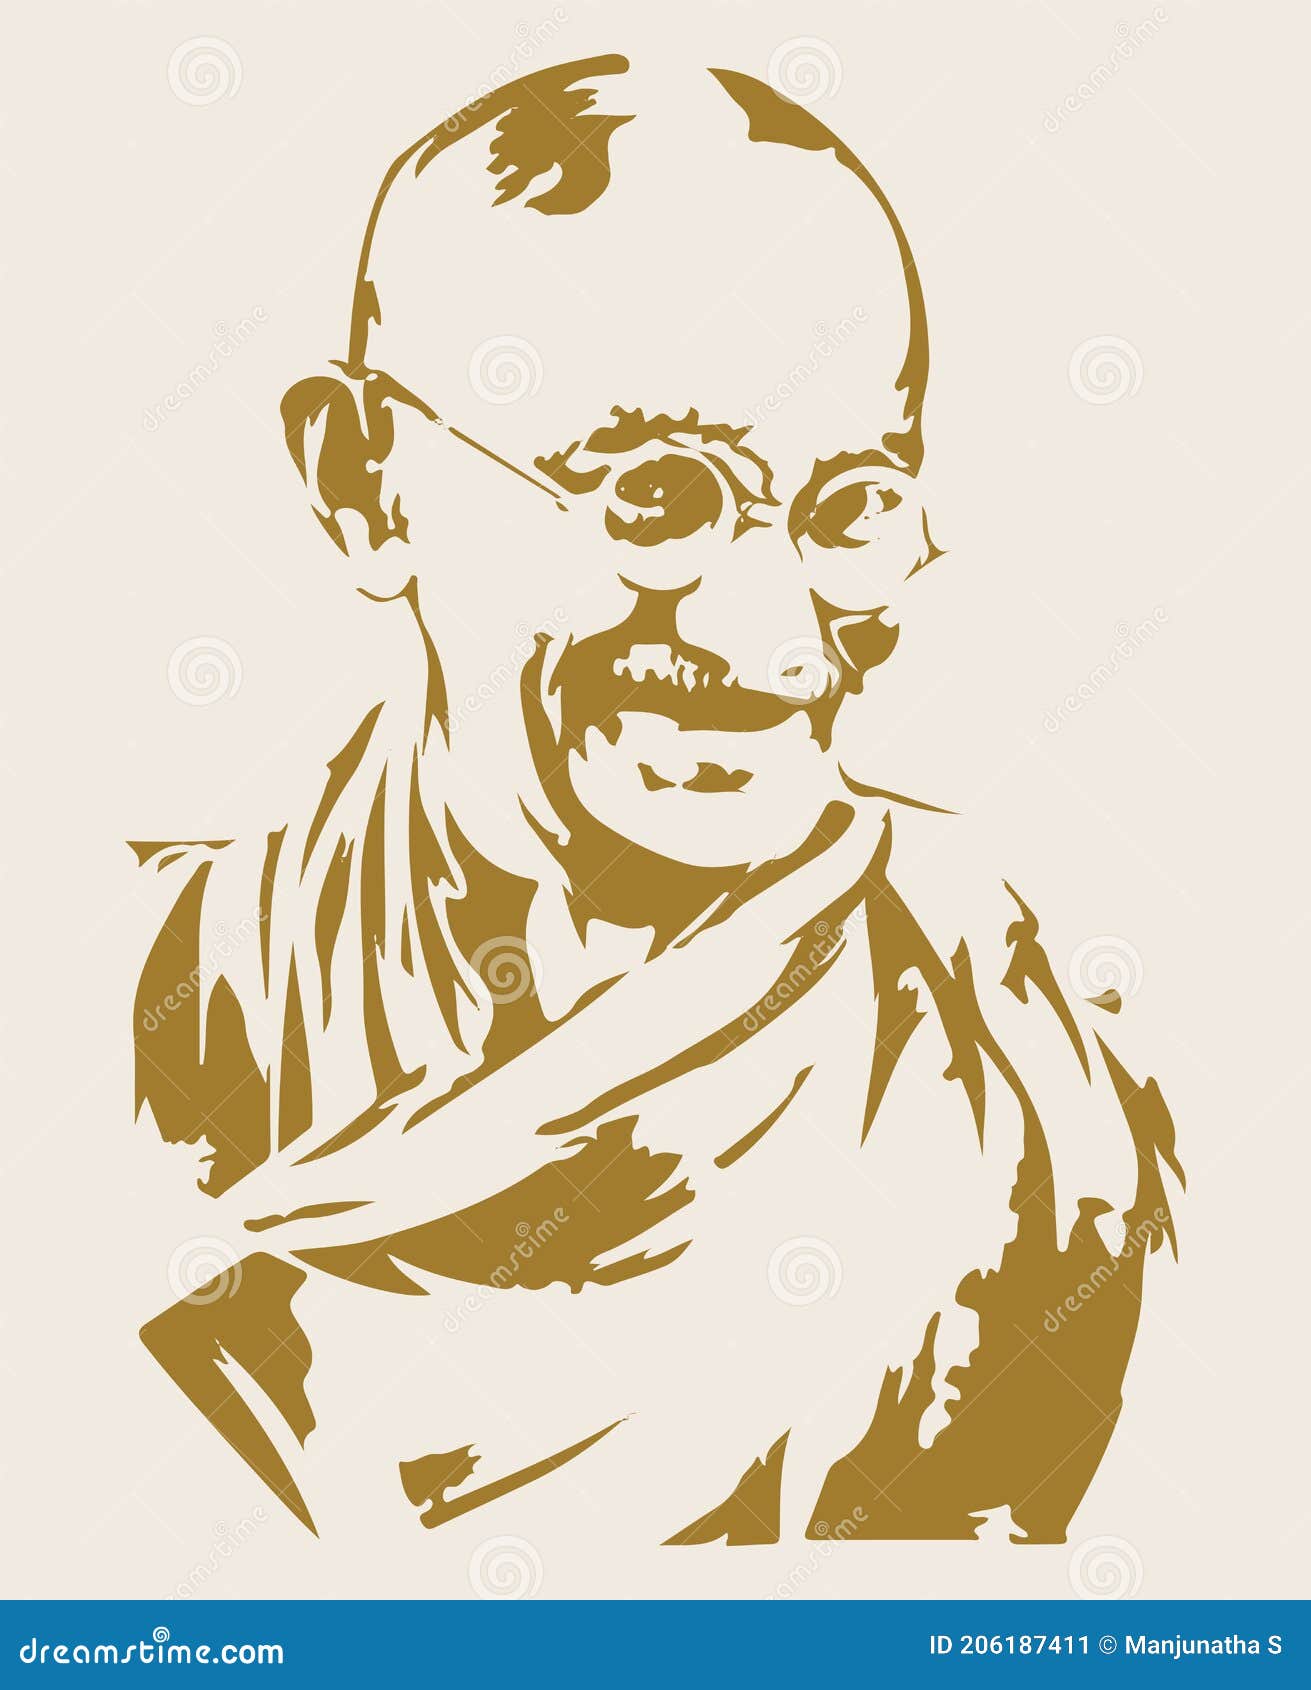 493 Mahatma Gandhi Sketch Images Stock Photos  Vectors  Shutterstock